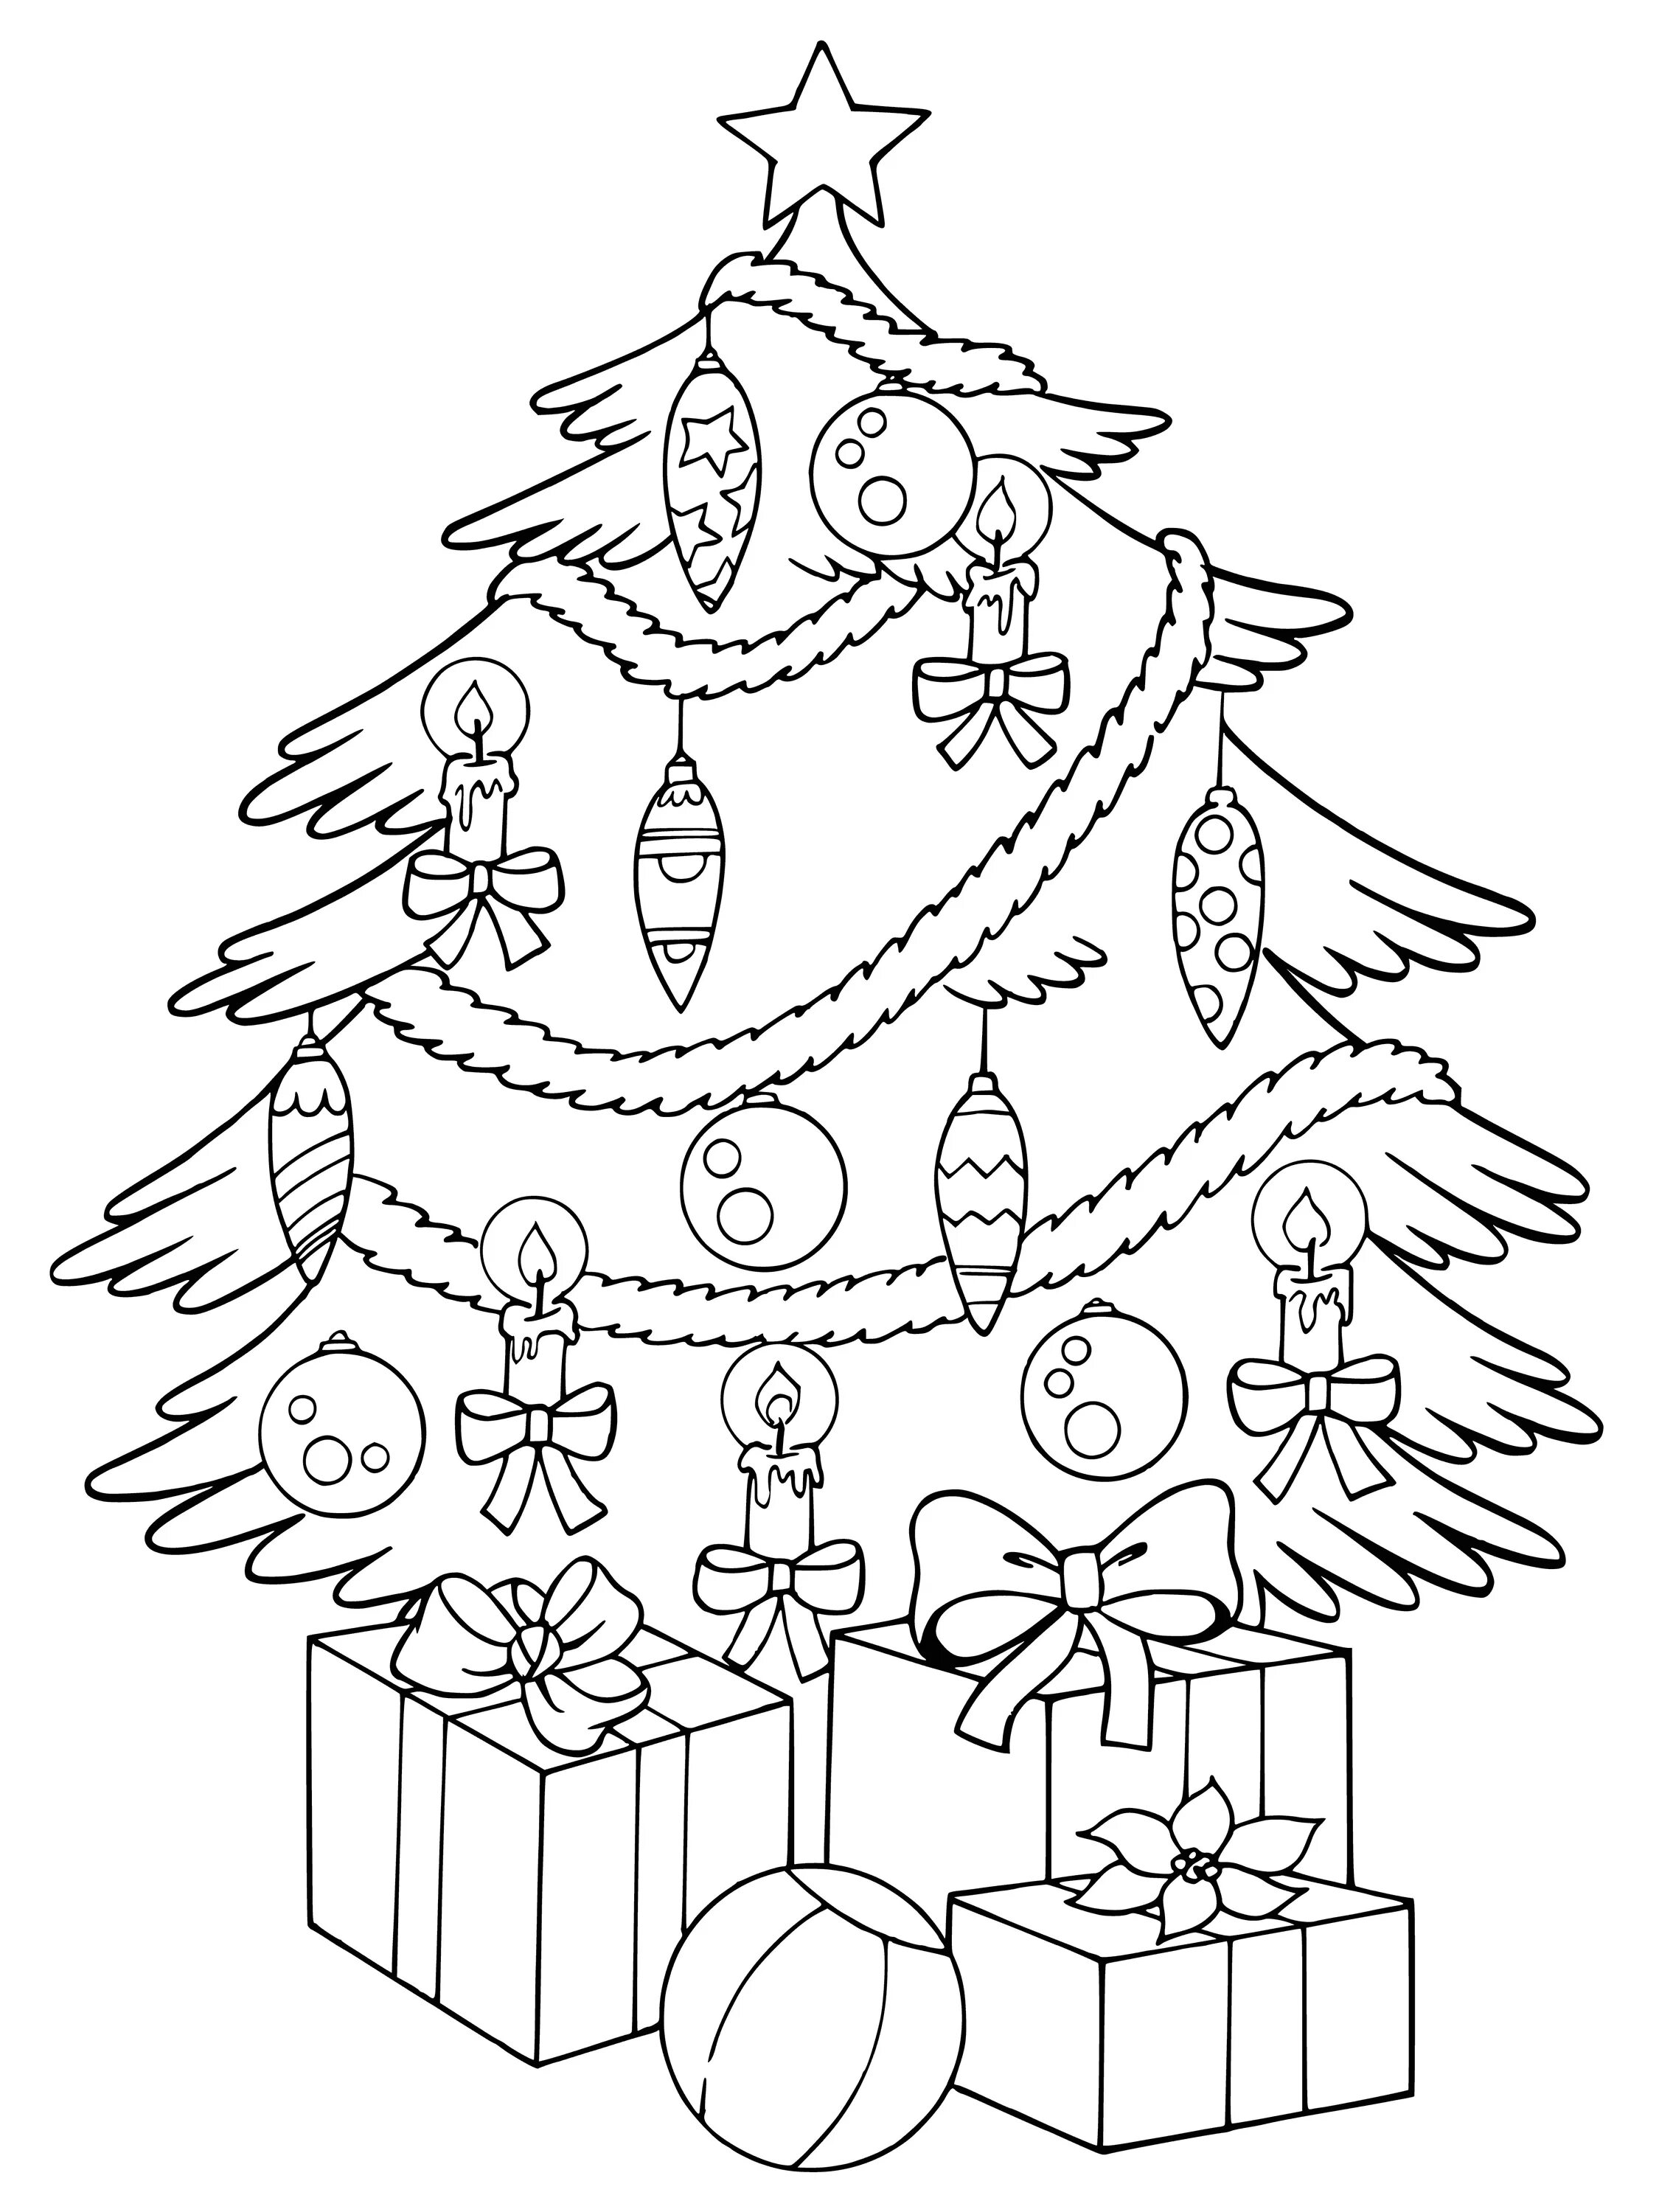 Юмористическая раскраска рождественской елки